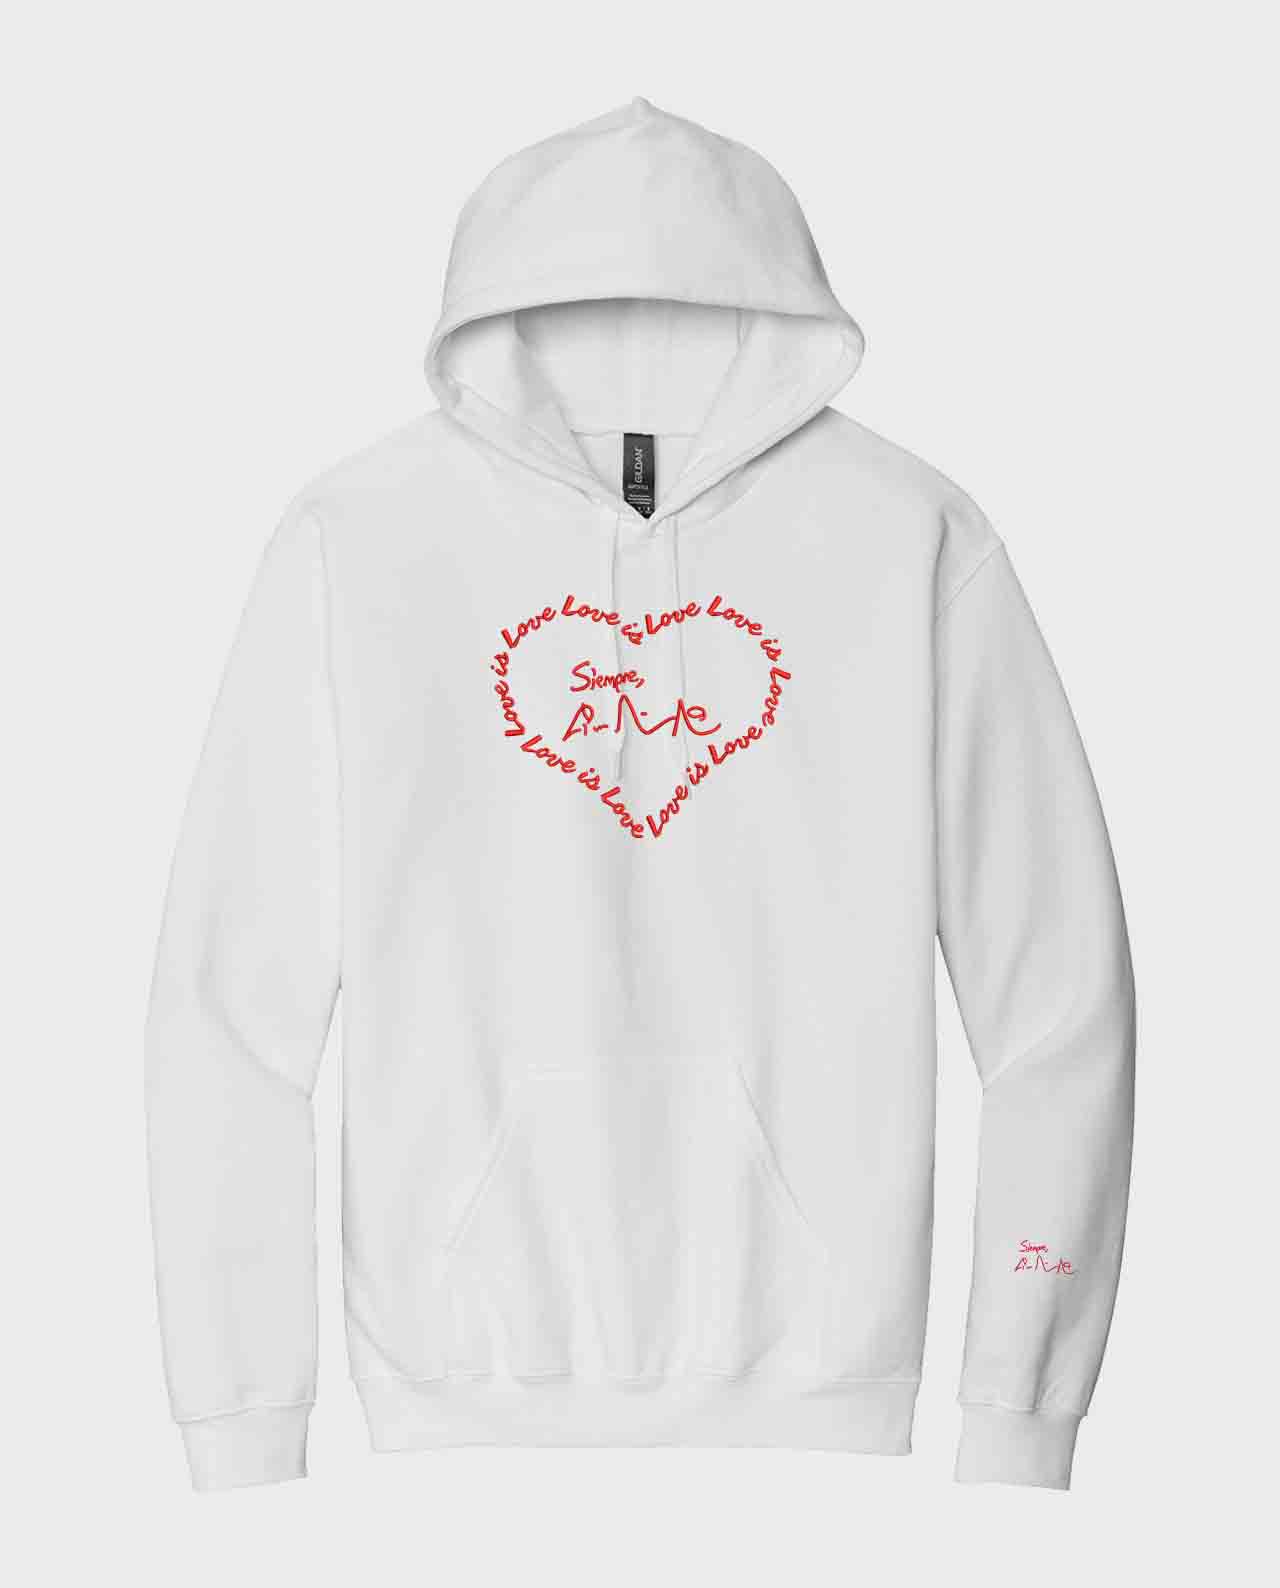 Love is Love Heart Signature Embroidered Hoodies - Teerico